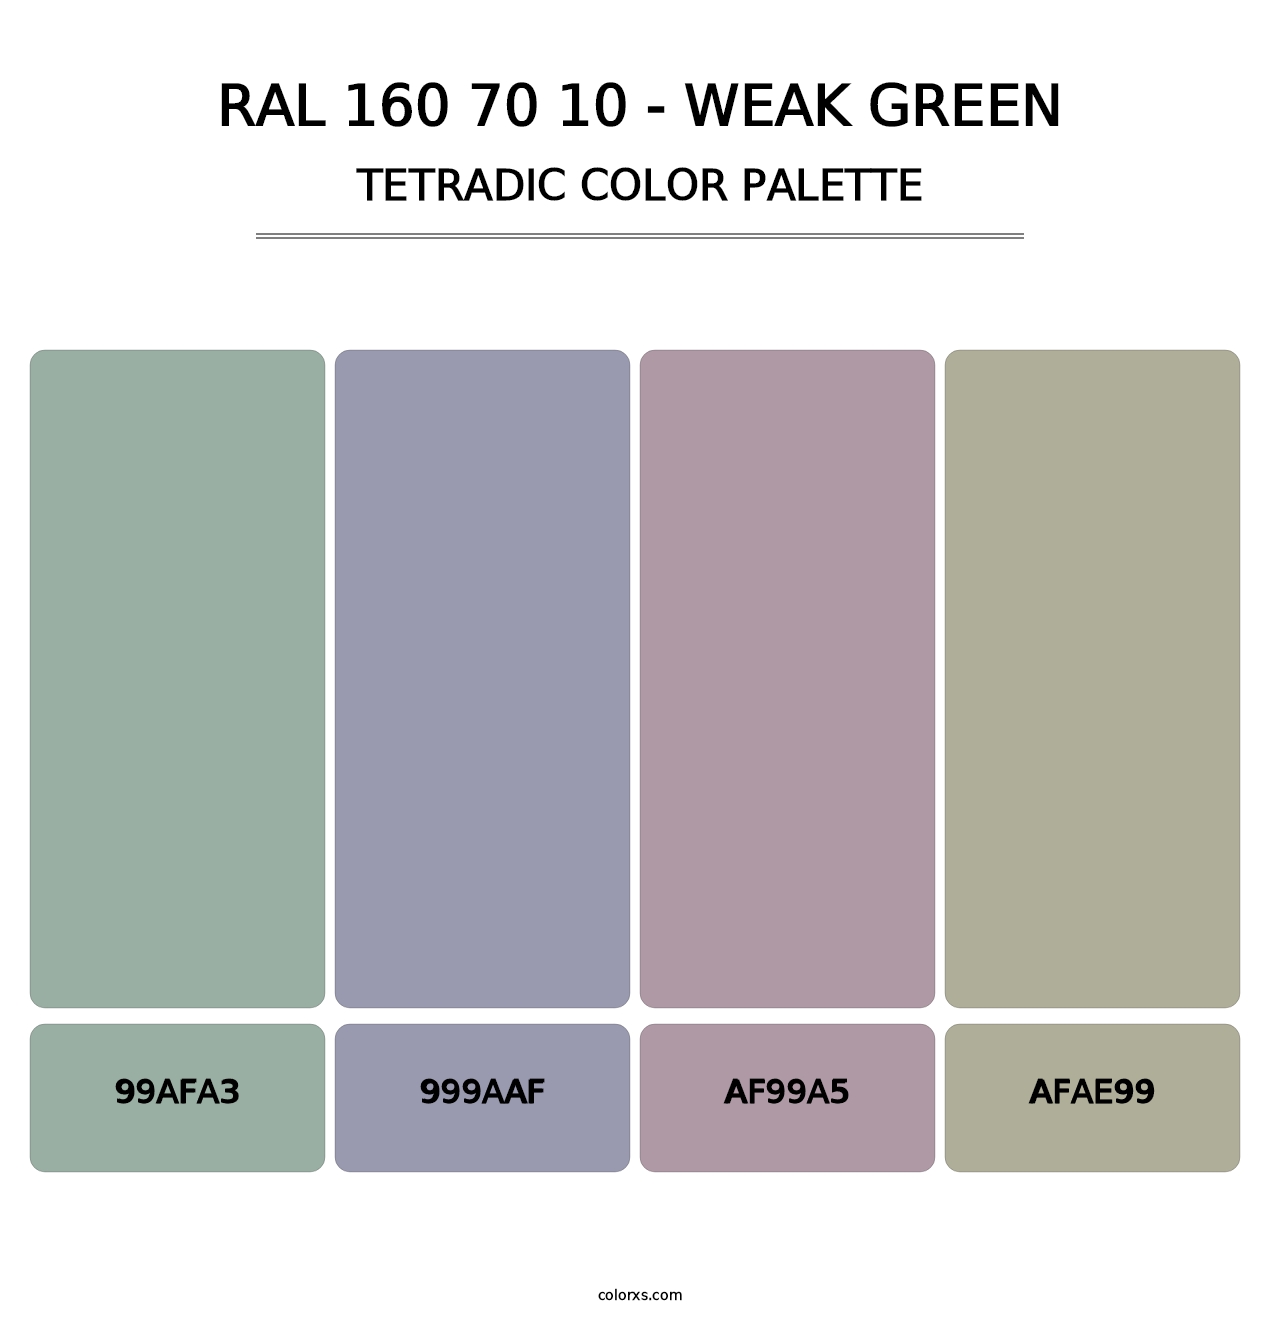 RAL 160 70 10 - Weak Green - Tetradic Color Palette